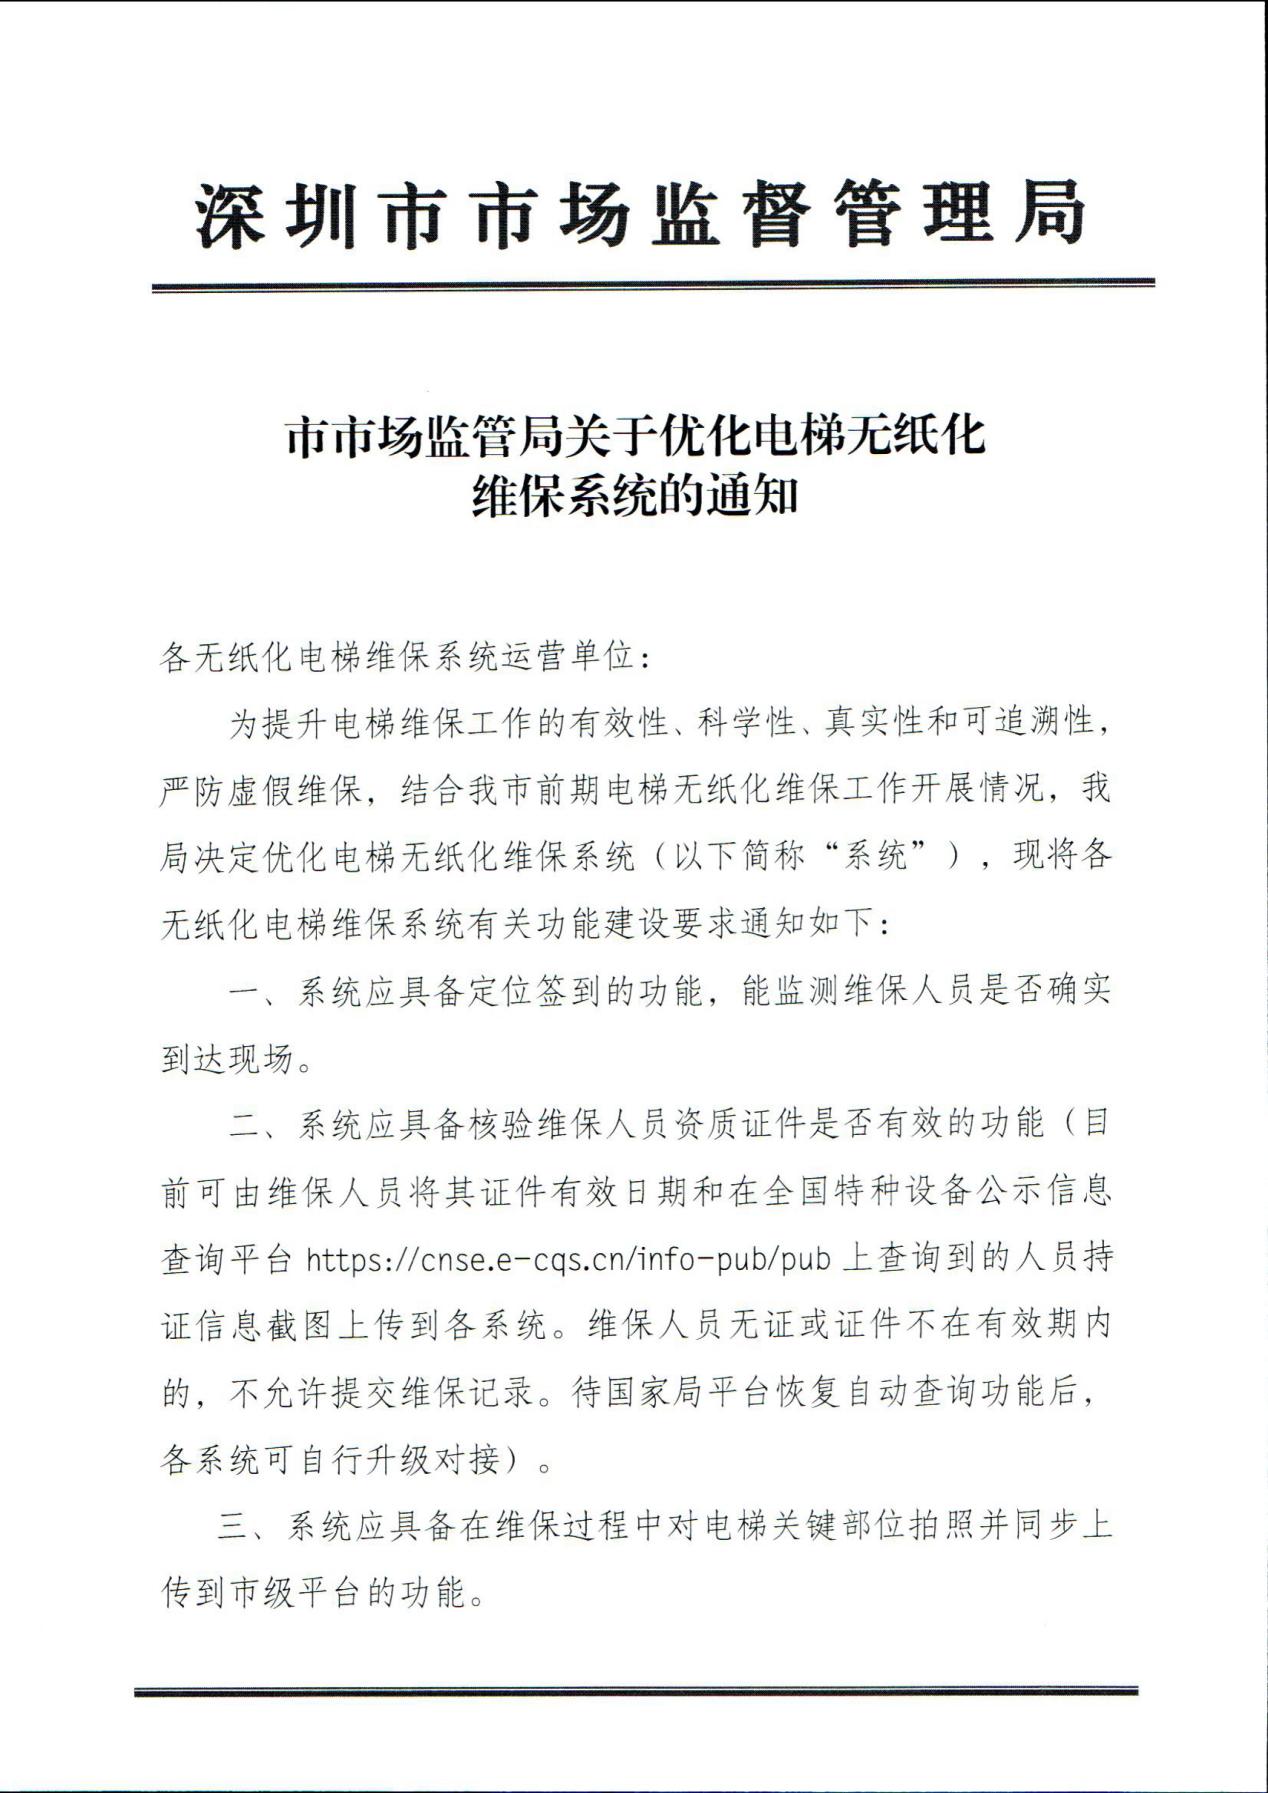 深圳:市场监管局关于优化电梯无纸化维保系统的通知!